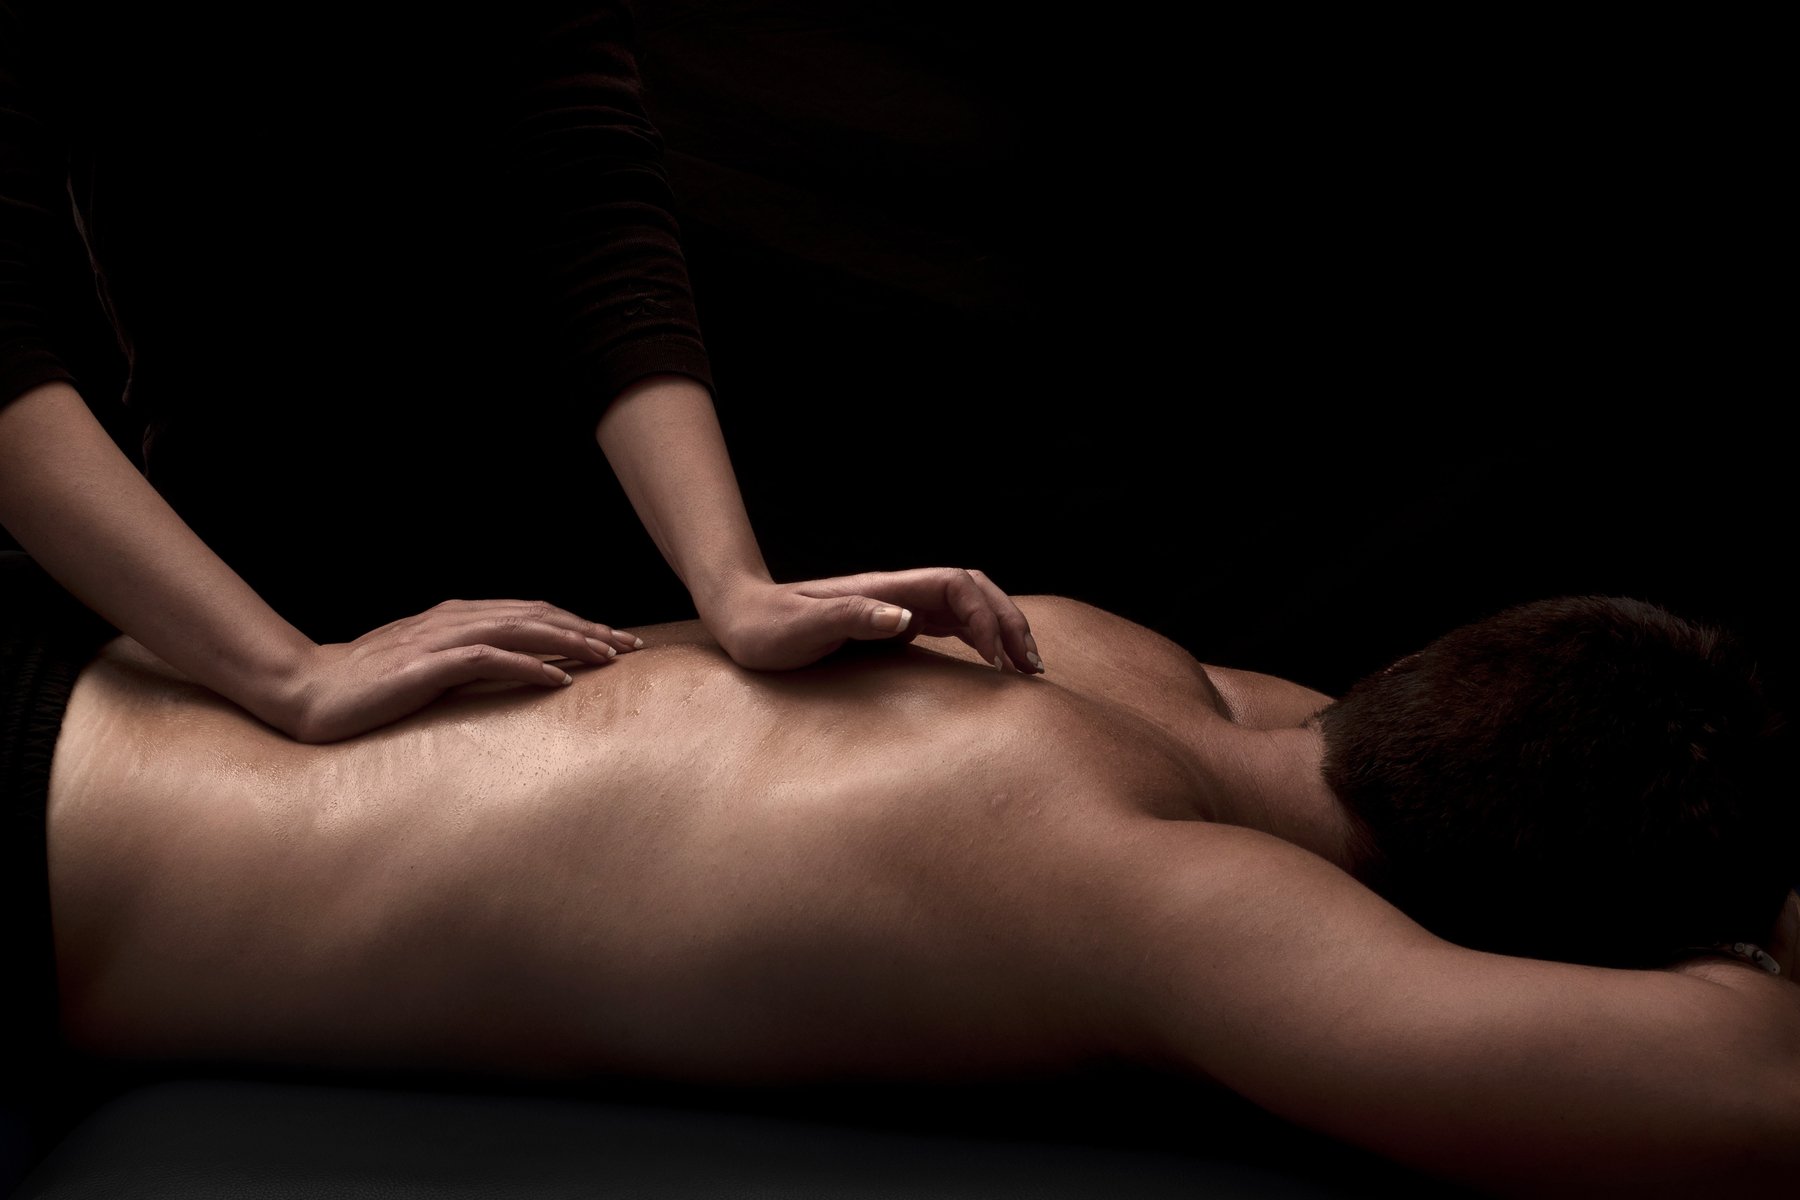 Erotic massage parlors in Nantou Taiwan Erotic massage Erotic massage Nantou